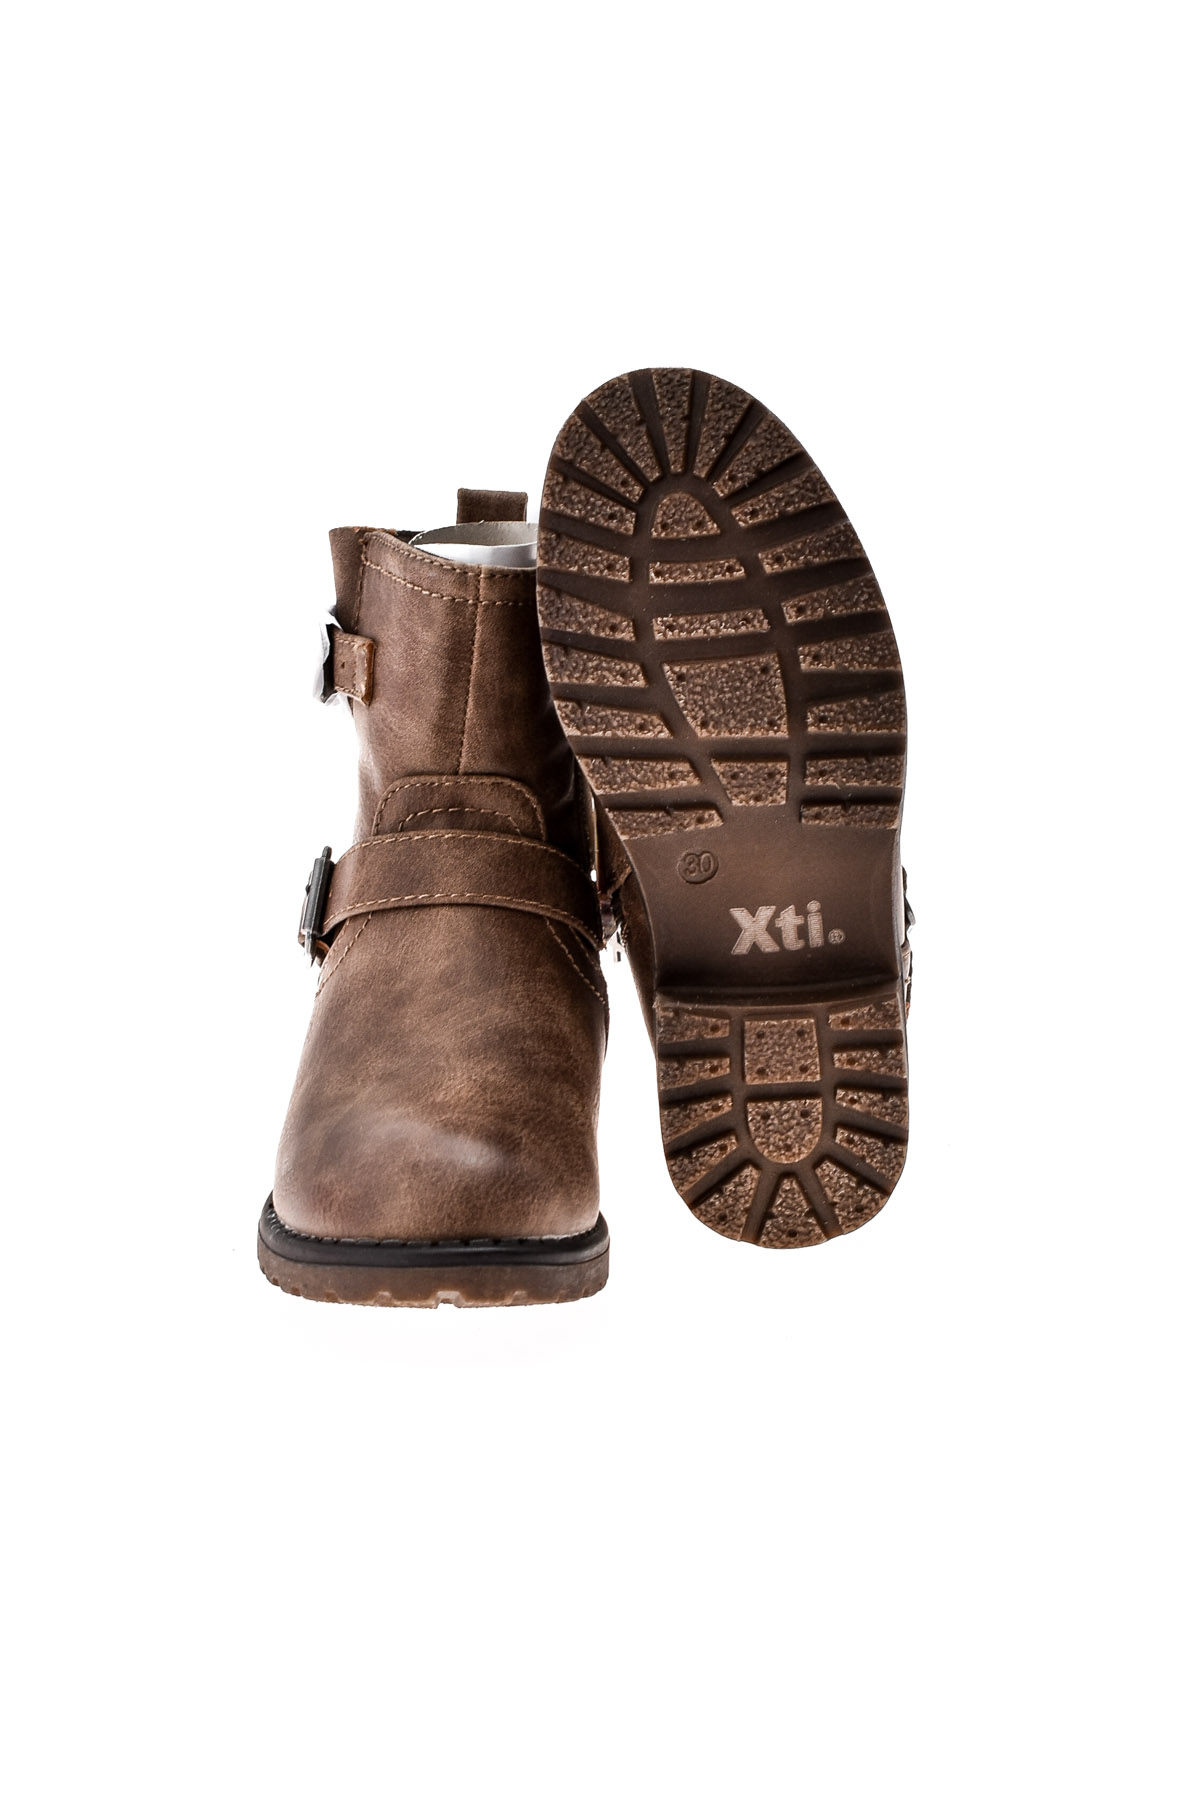 Buty dla dziewczynki - Xti Kids - 4